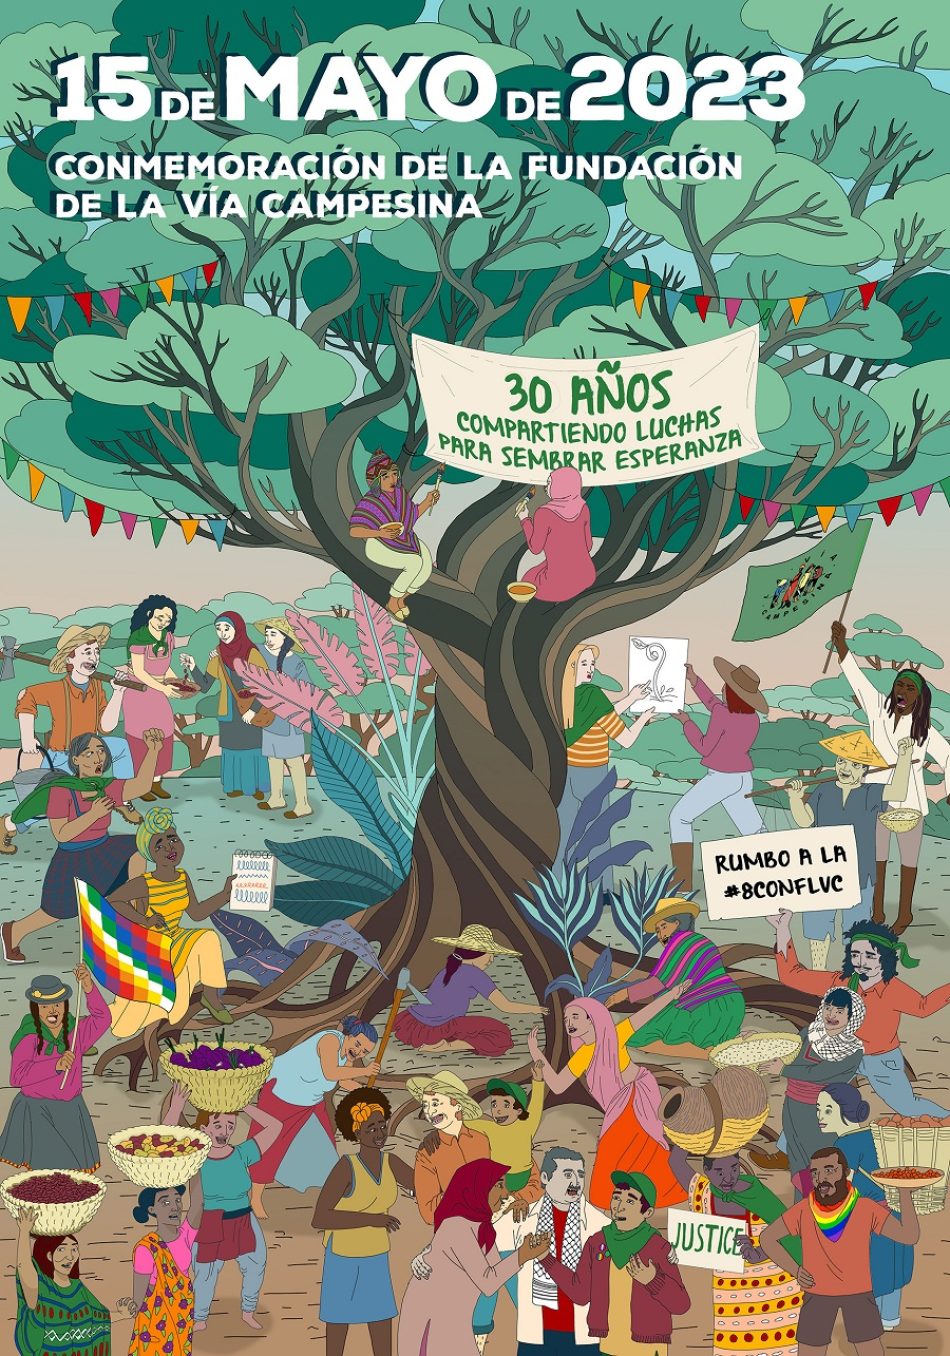 De Mons al mundo: La Vía Campesina celebra 30 años globalizando la lucha campesina y la solidaridad